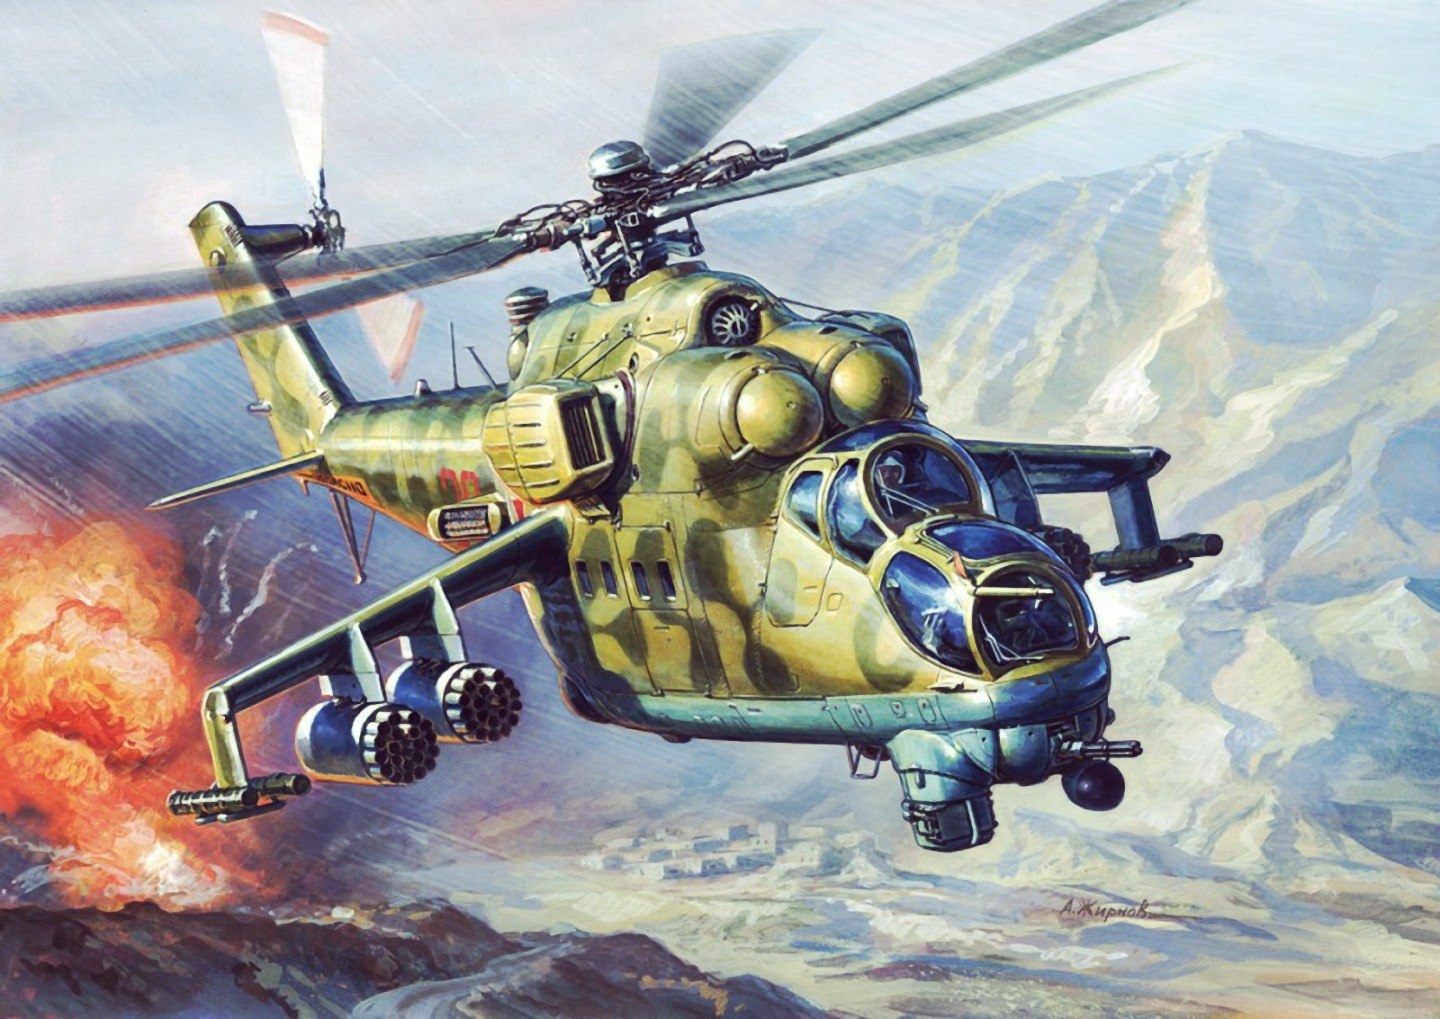 Винтокрылые убийцы, покорившие весь мир: 5 самых востребованных вертолётов России